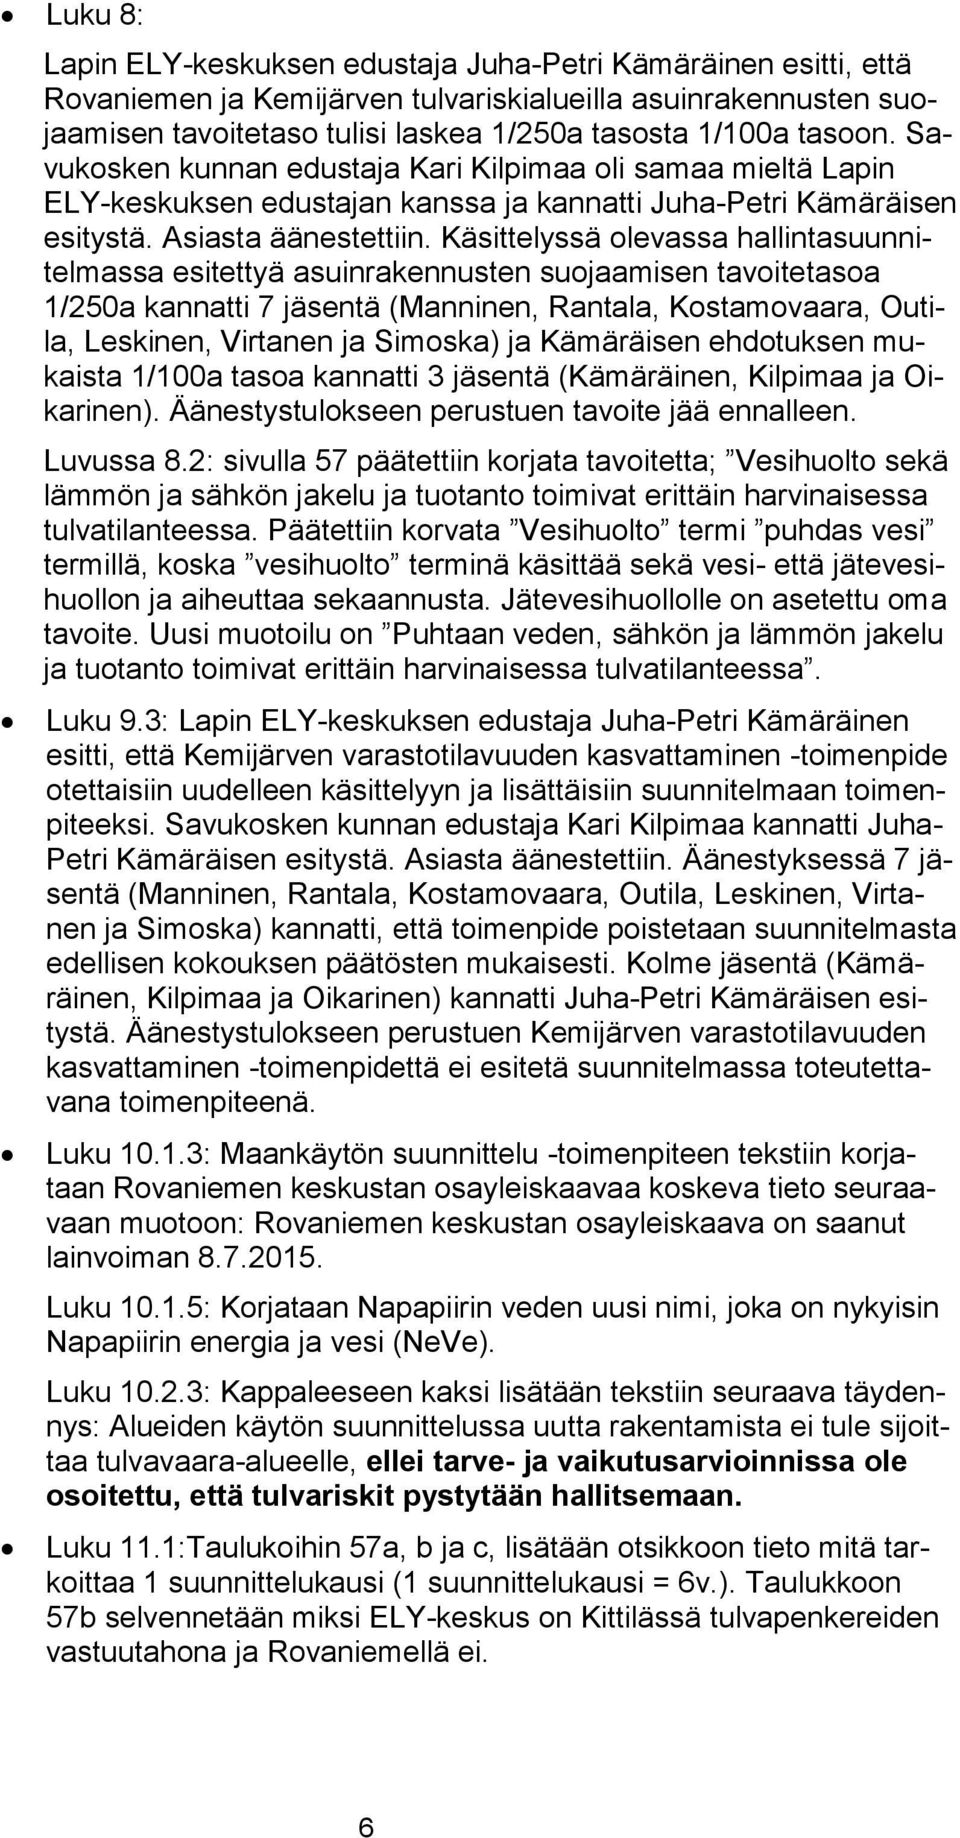 Käsittelyssä olevassa hallintasuunnitelmassa esitettyä asuinrakennusten suojaamisen tavoitetasoa 1/250a kannatti 7 jäsentä (Manninen, Rantala, Kostamovaara, Outila, Leskinen, Virtanen ja Simoska) ja